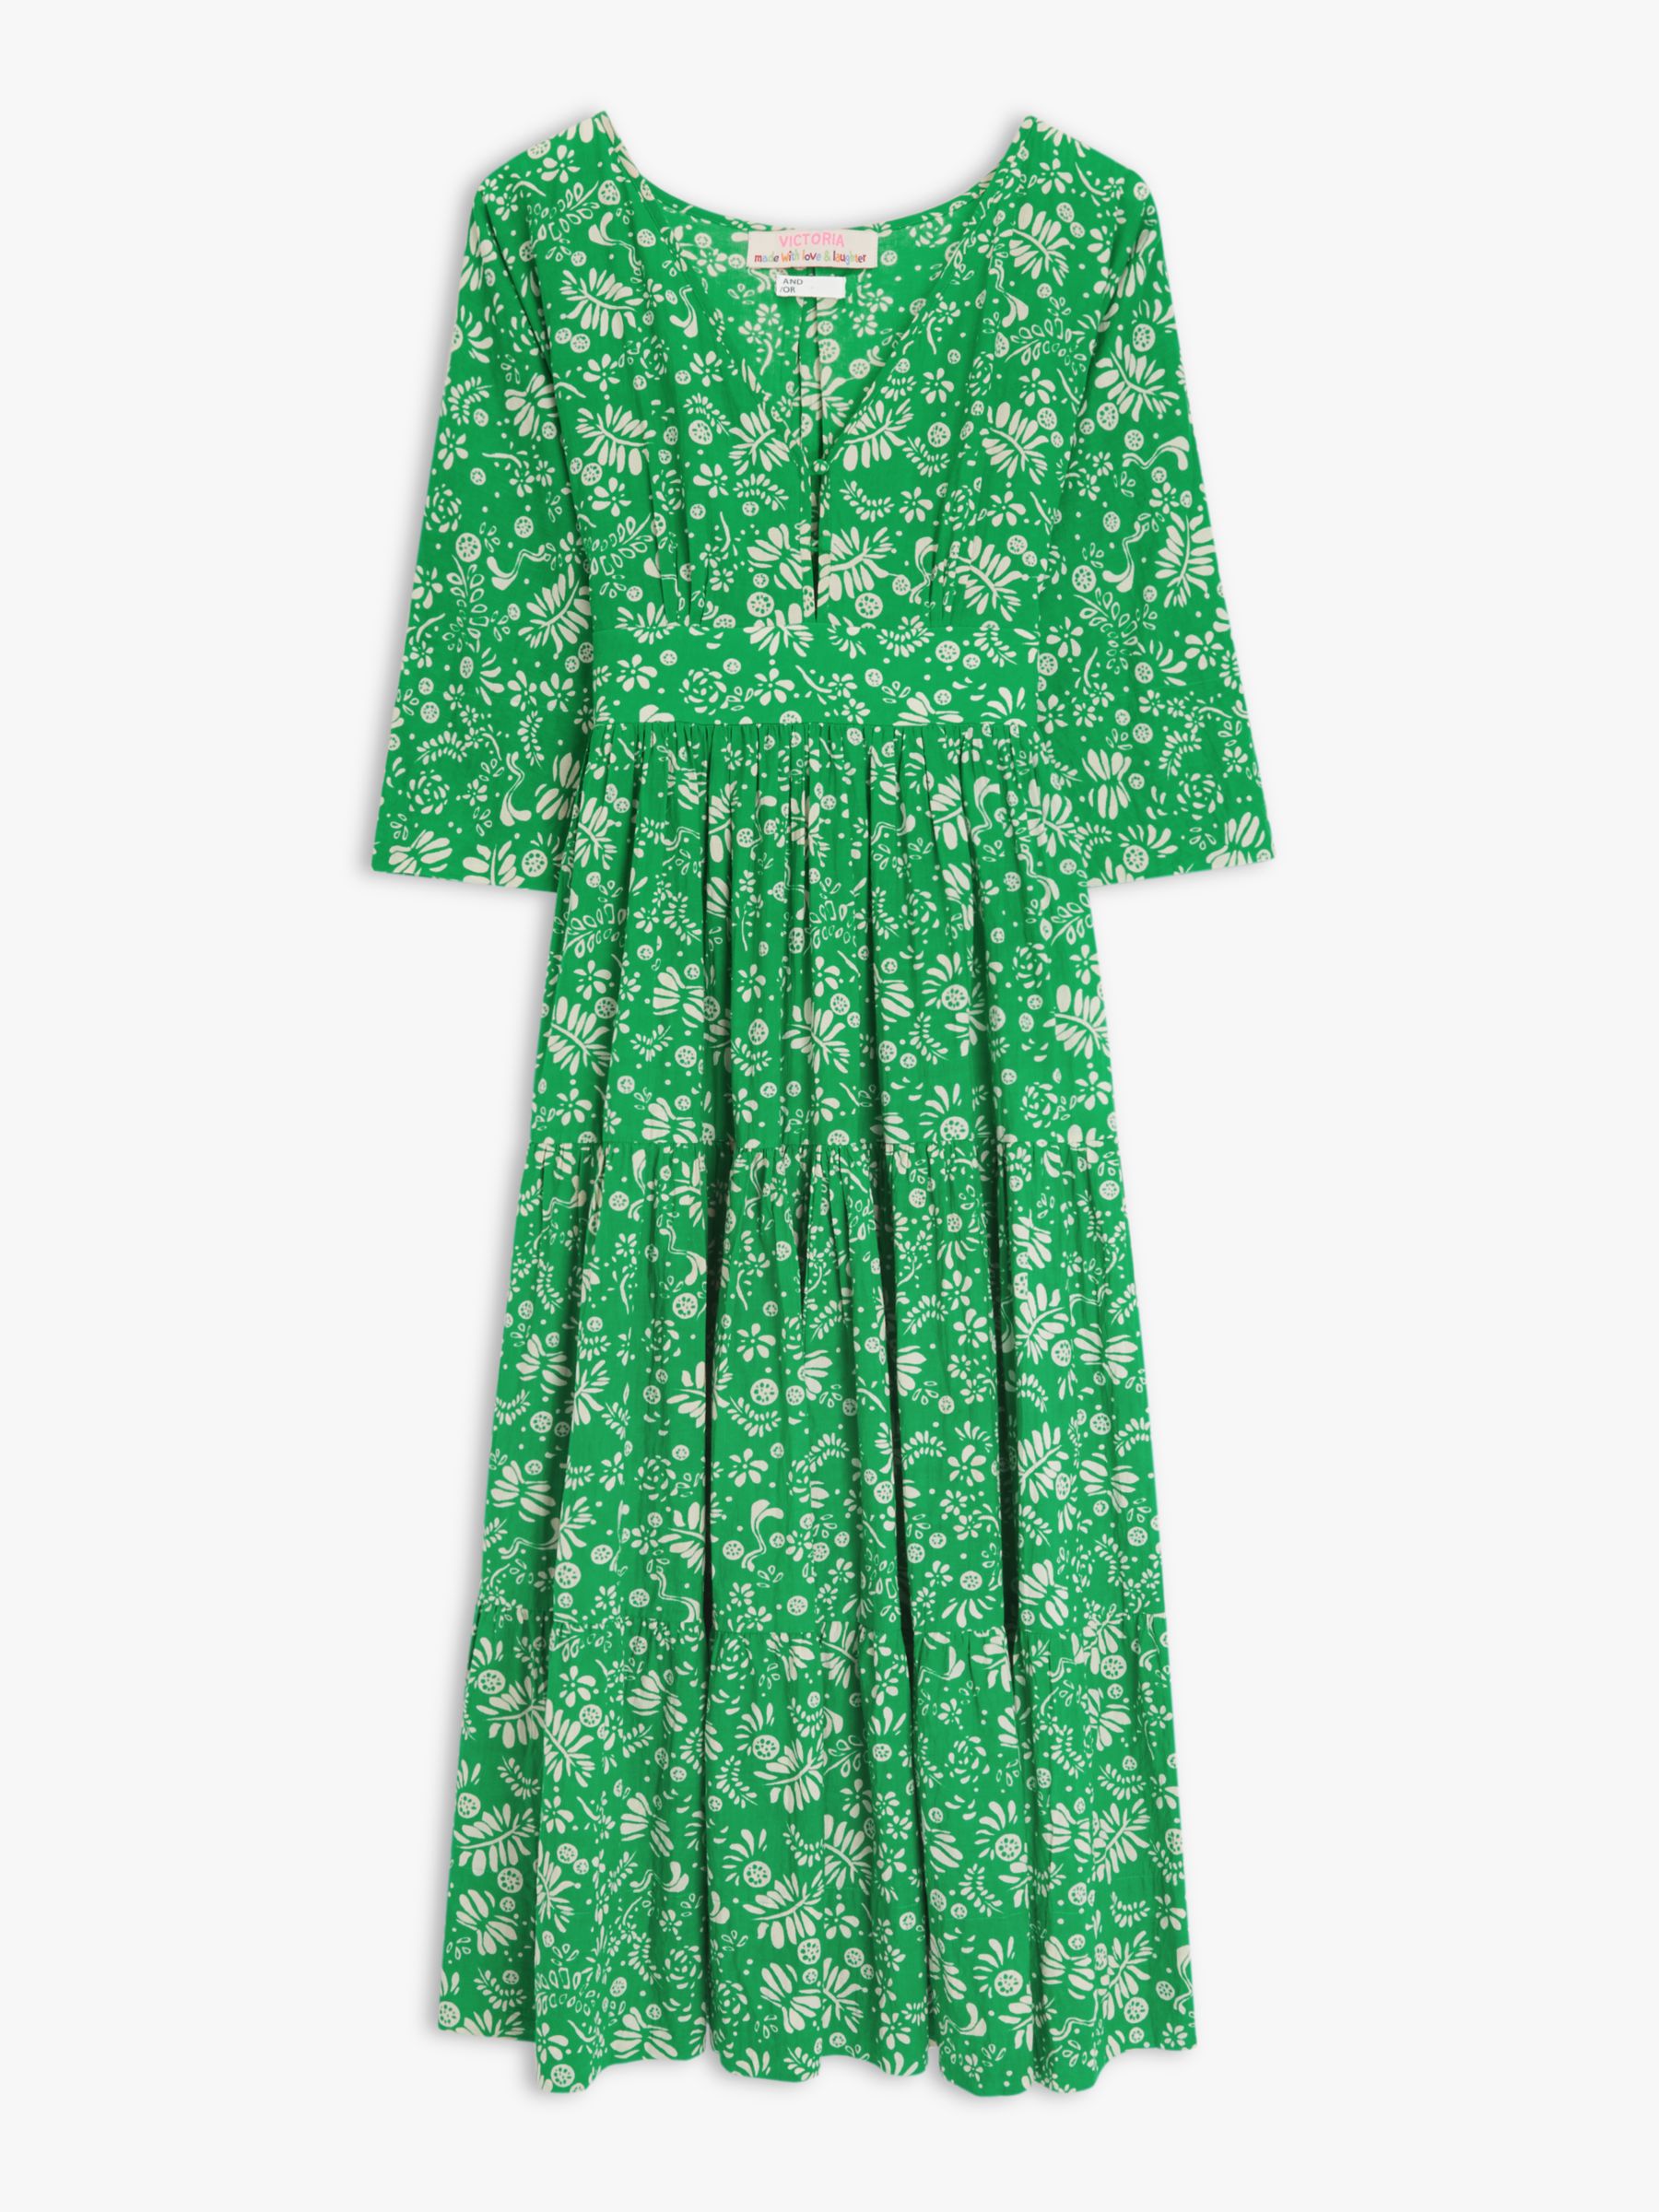 AND/OR La Galeria Elefante Kimono Mexican Fern Print Dress, Green